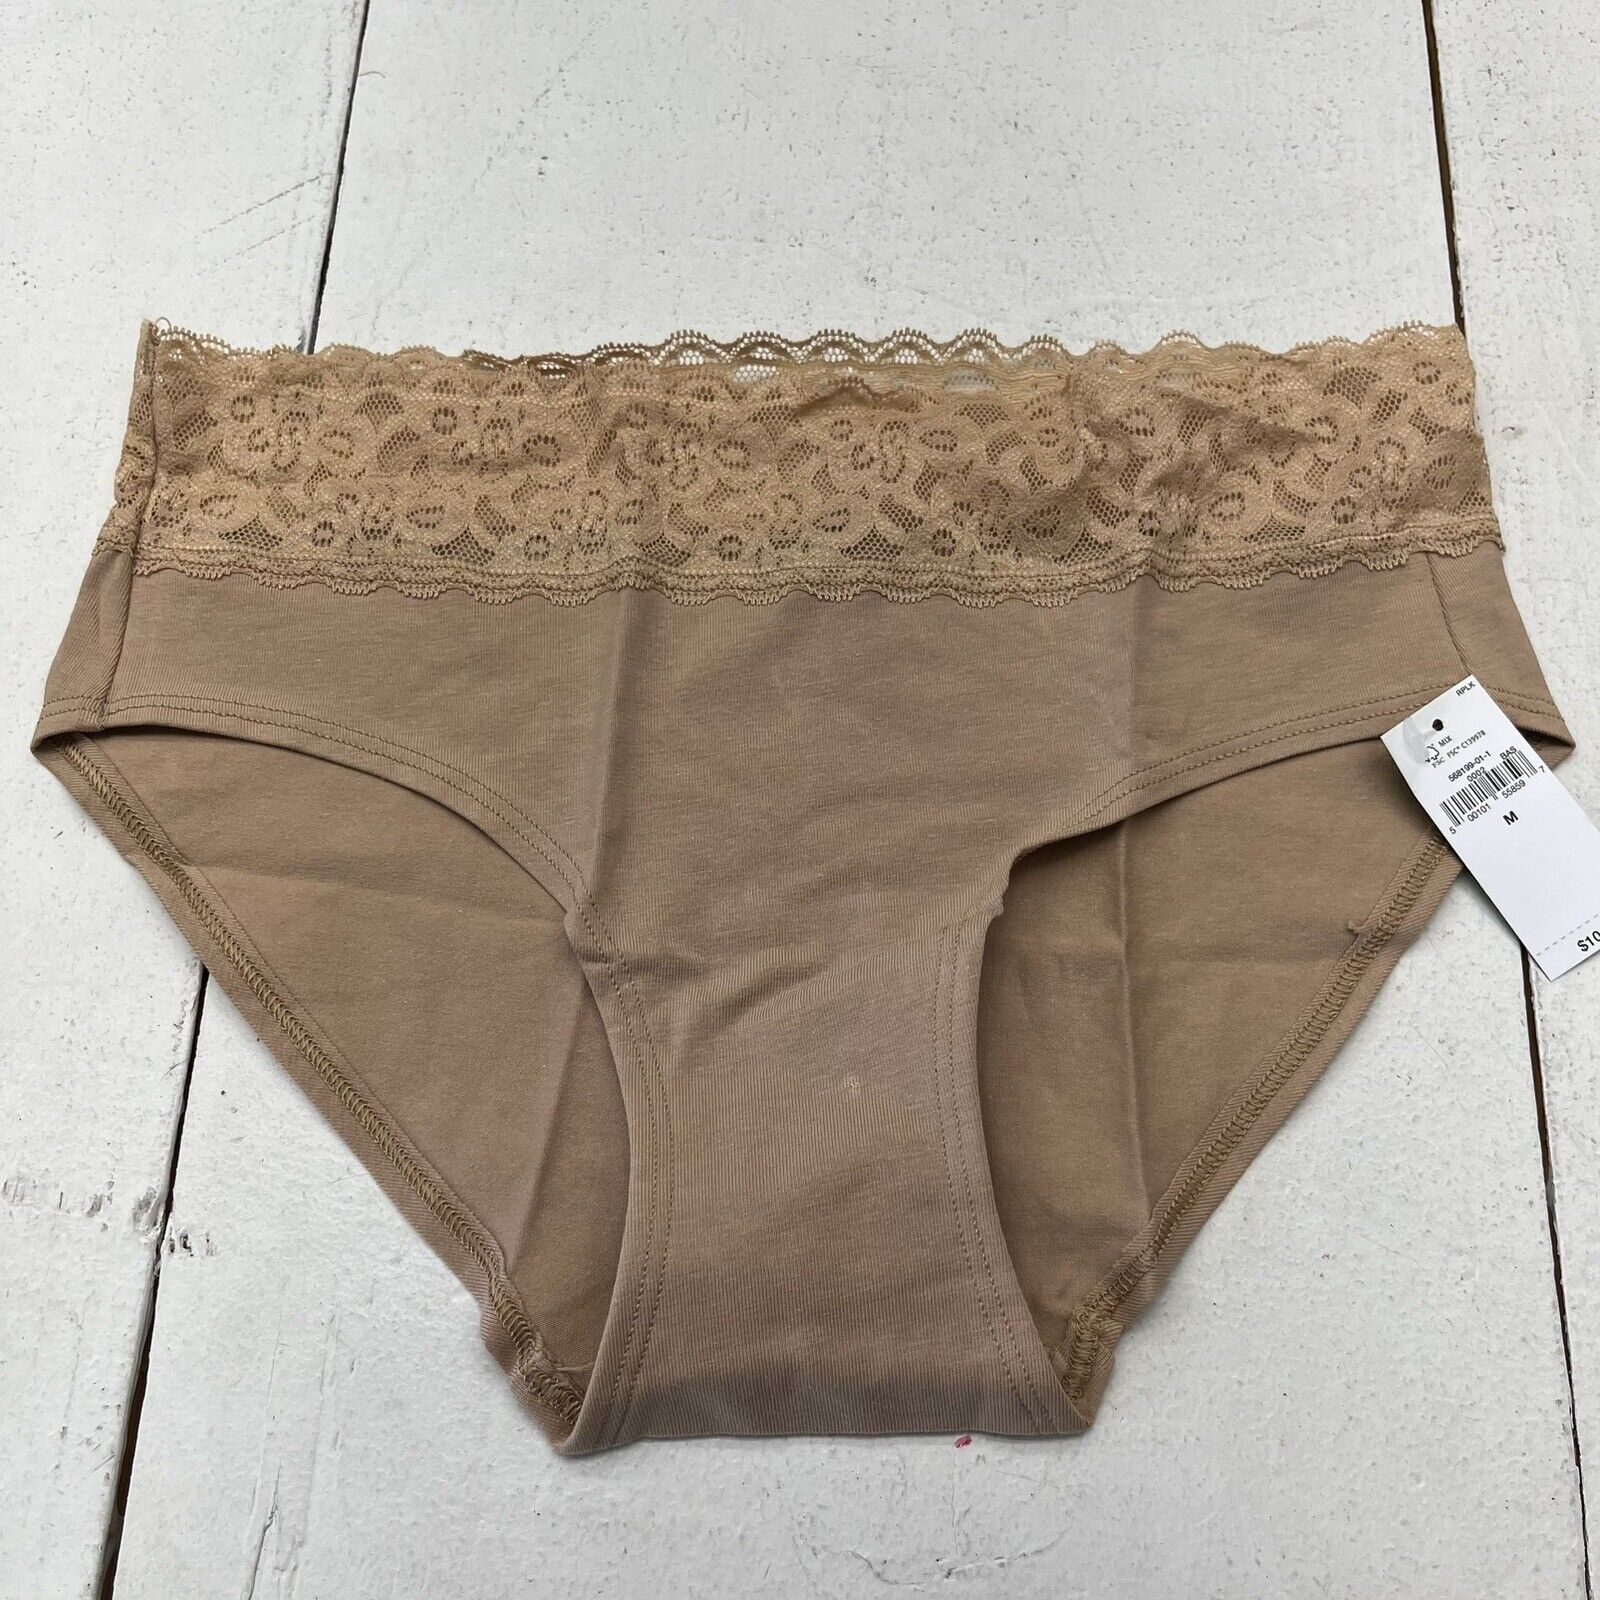 Gap Body Beige Lace Hipster Underwear Women's Size Medium NEW